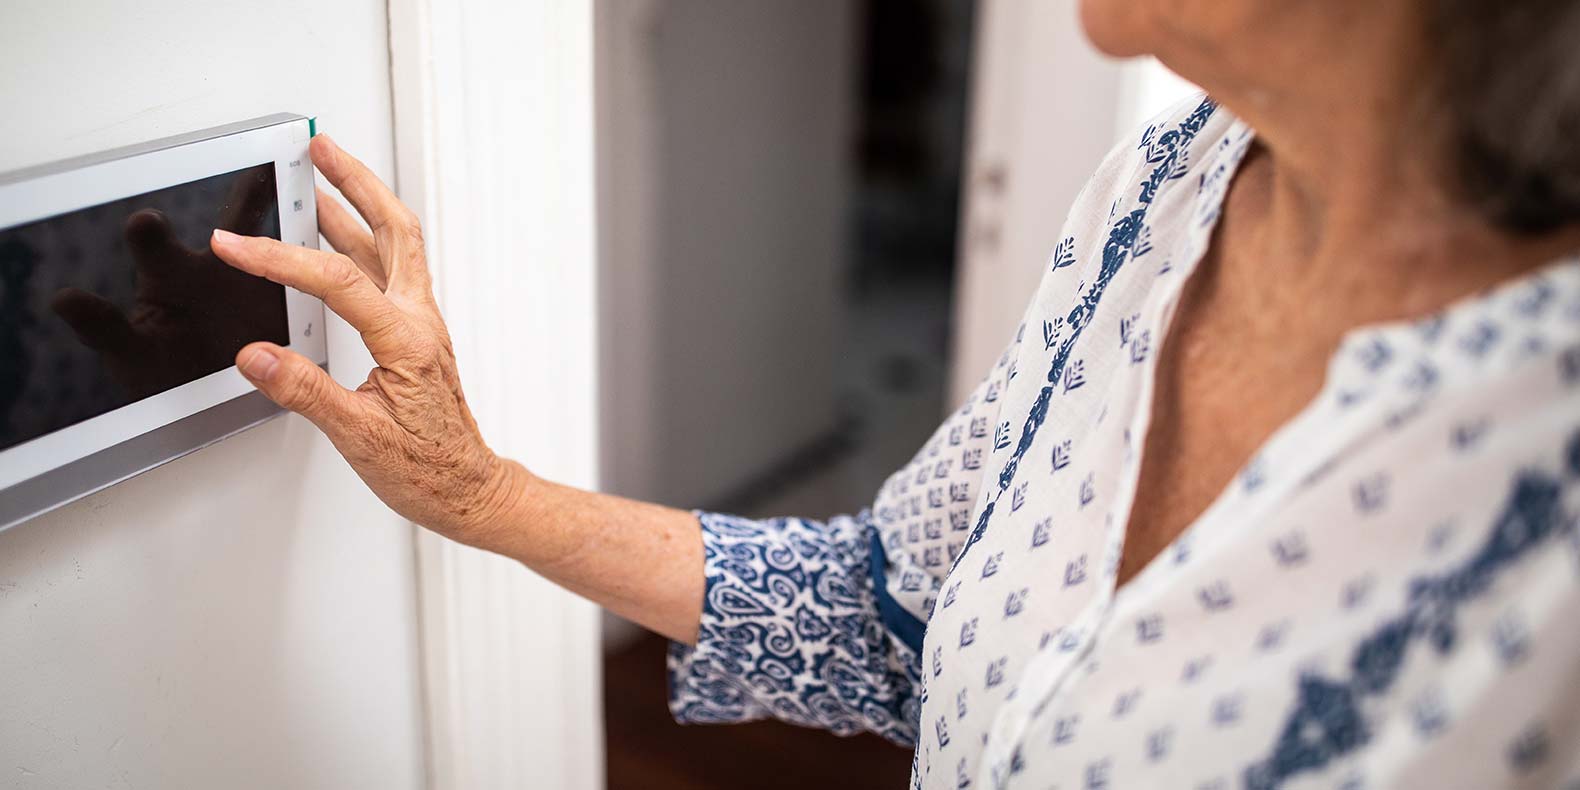 7 Home Senior Safety Tips